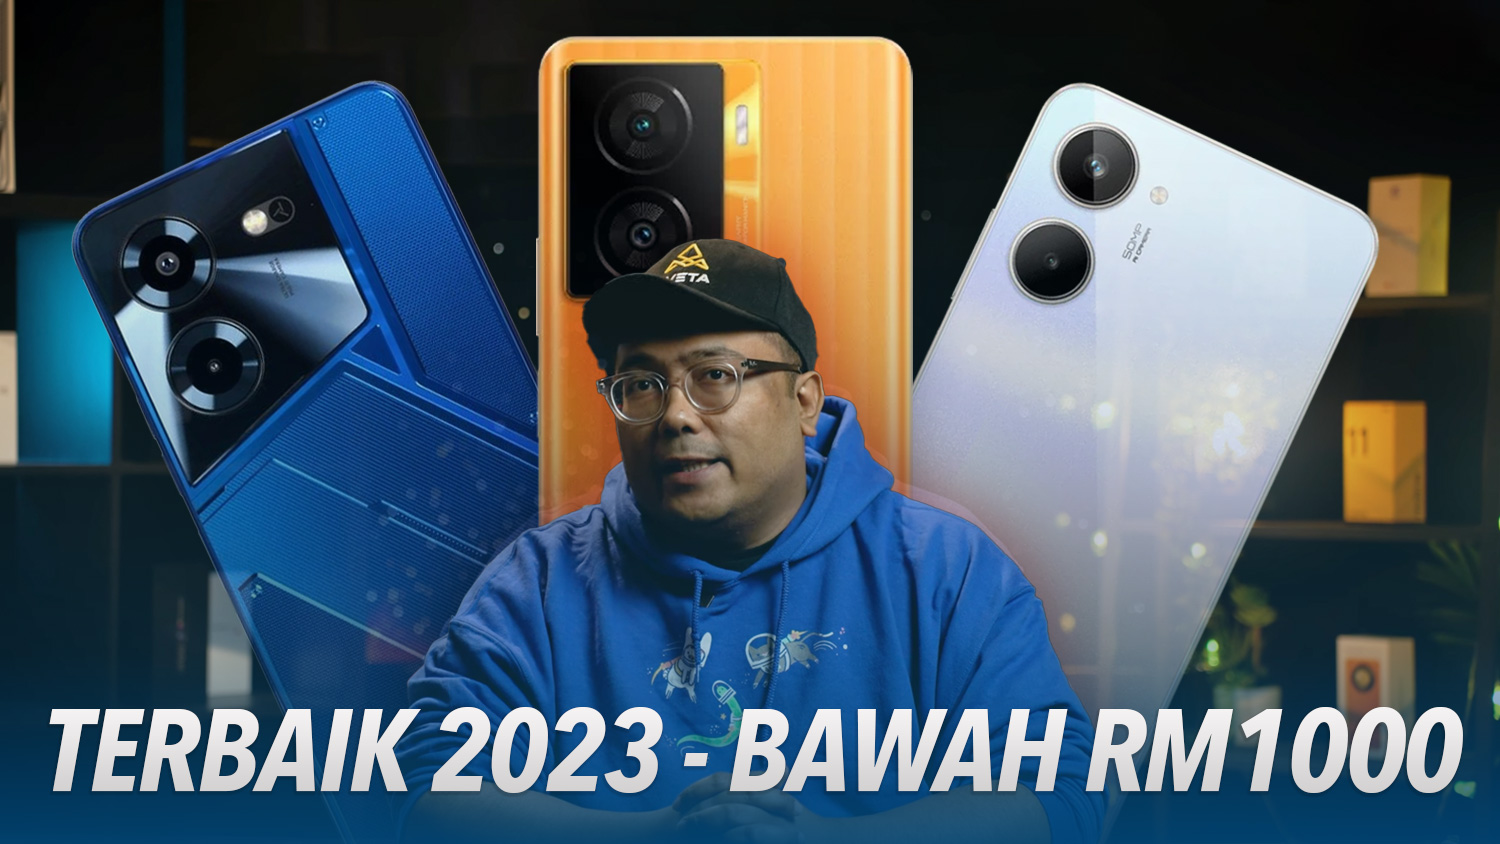 Peranti Terbaik Amanz 2023 – Telefon Bawah RM1000